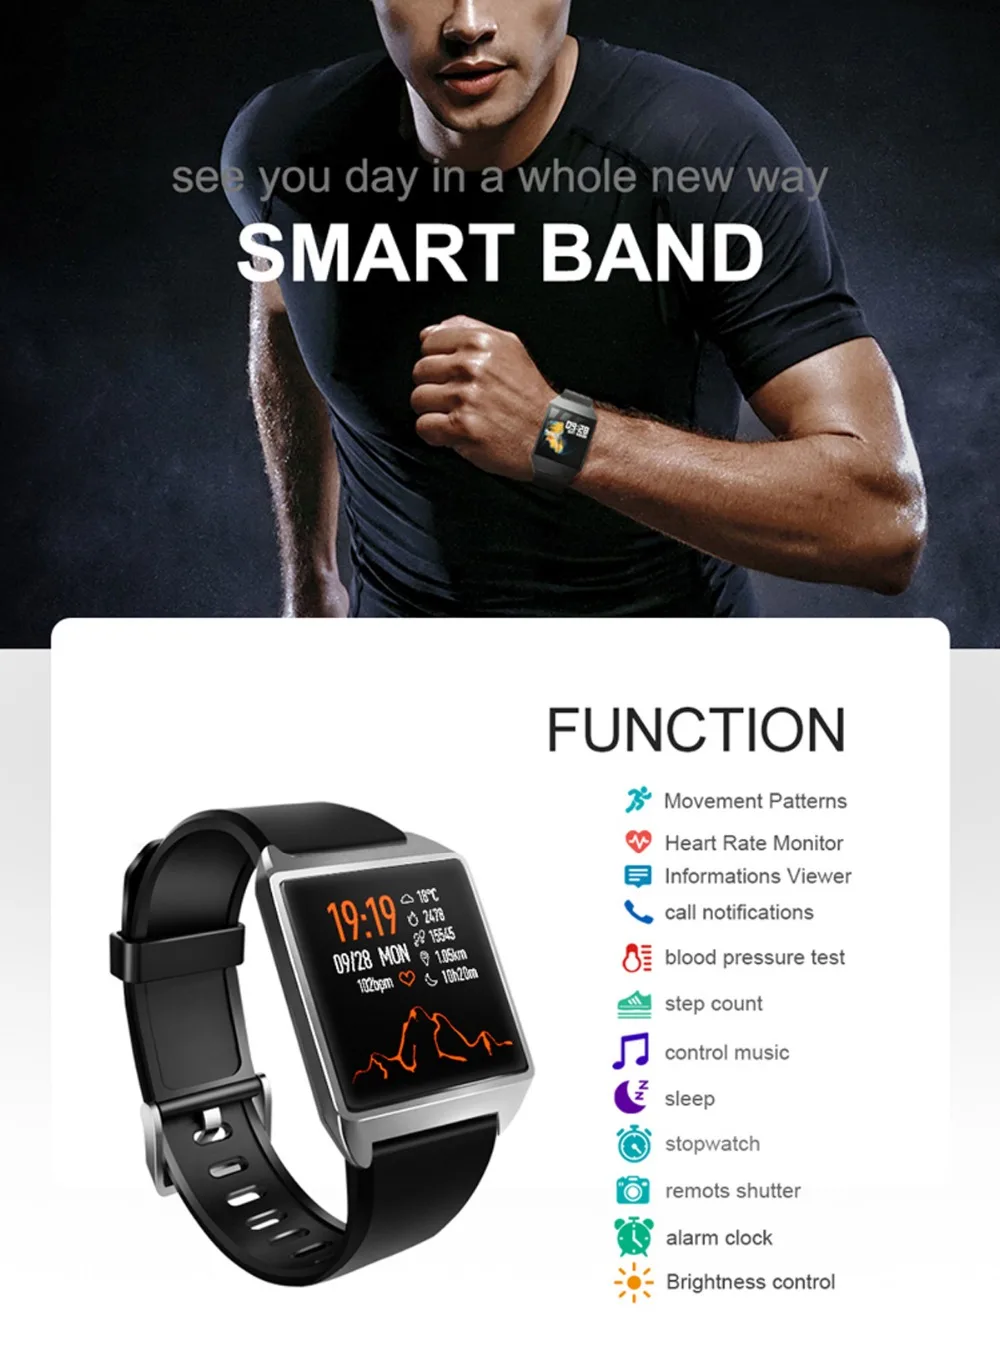 GEJIAN Новые смарт-часы Wo для мужчин s Мода Фитнес IP67 Водонепроницаемый gps для мужчин сердечного ритма кровяное давление спортивные Смарт-часы Android IOS